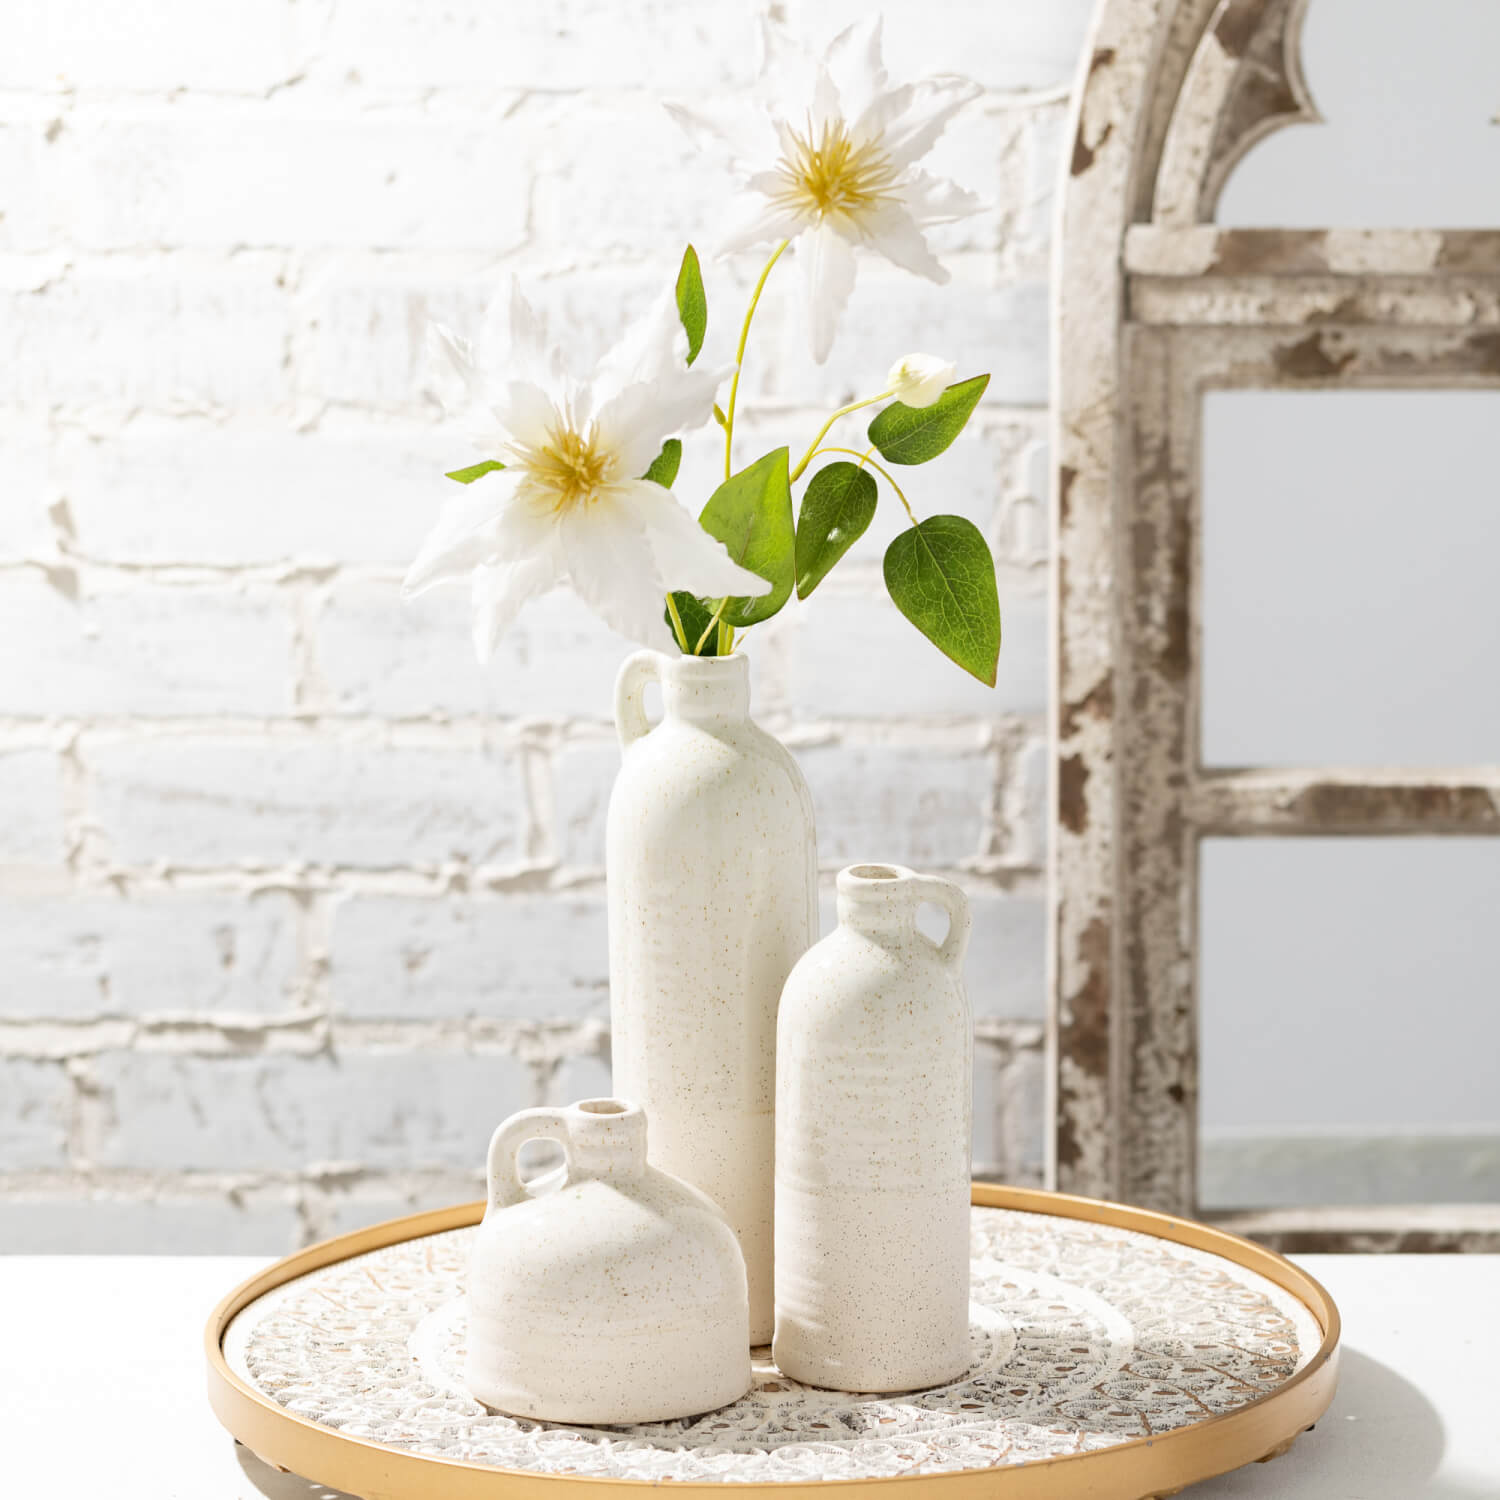 Cream Bottle Vases Set/3  Sullivans   